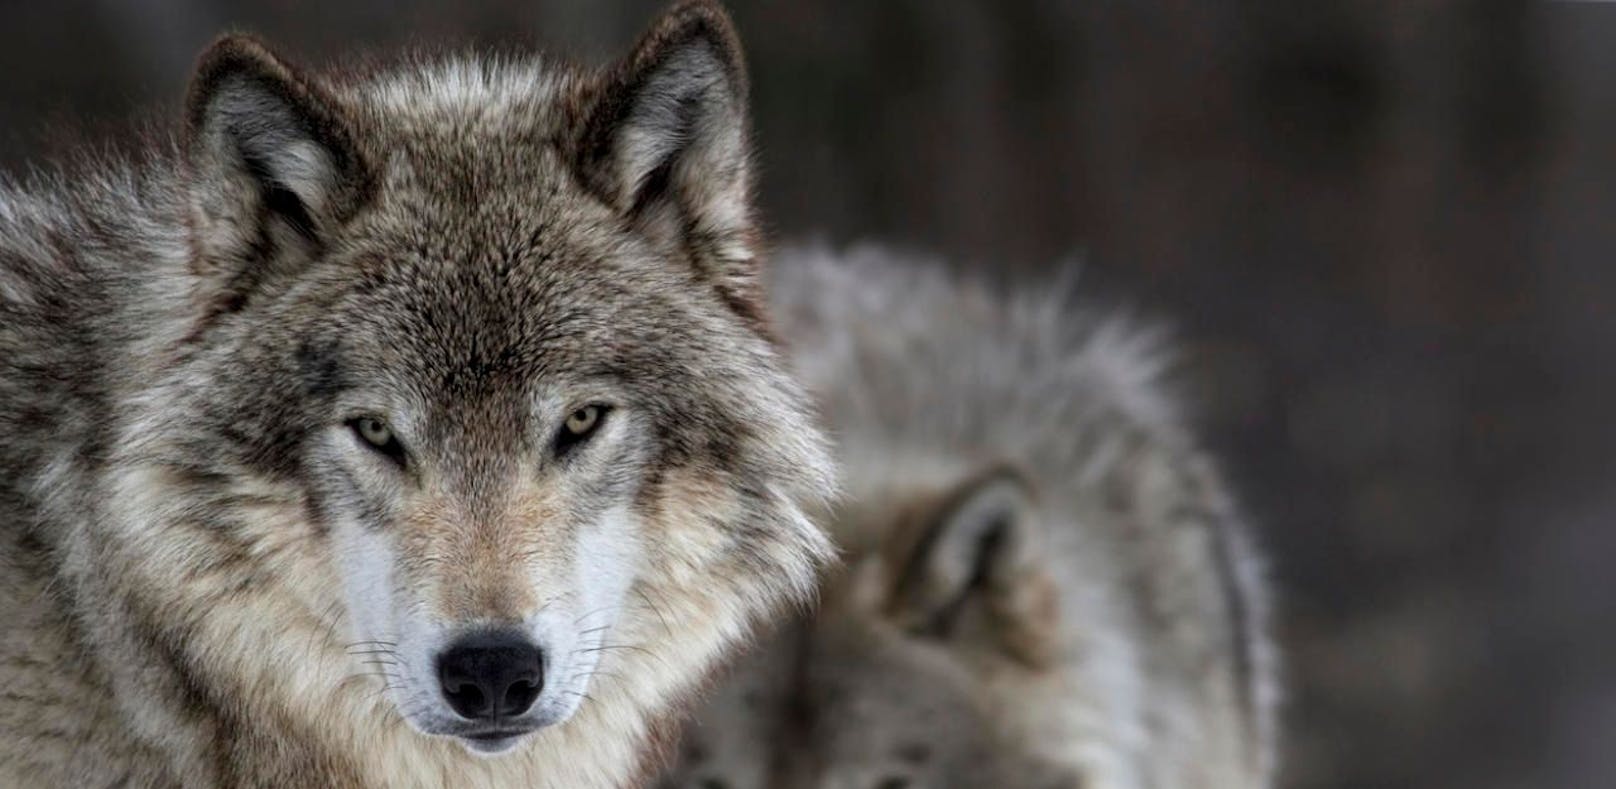 Die Landesregierung Salzburg hat einen Wolfsmanagementplan vorgelegt. Der WWF Österreich erkennt manche Fortschritte an, sieht jedoch noch einige Schwachstellen. (Symbolfoto)